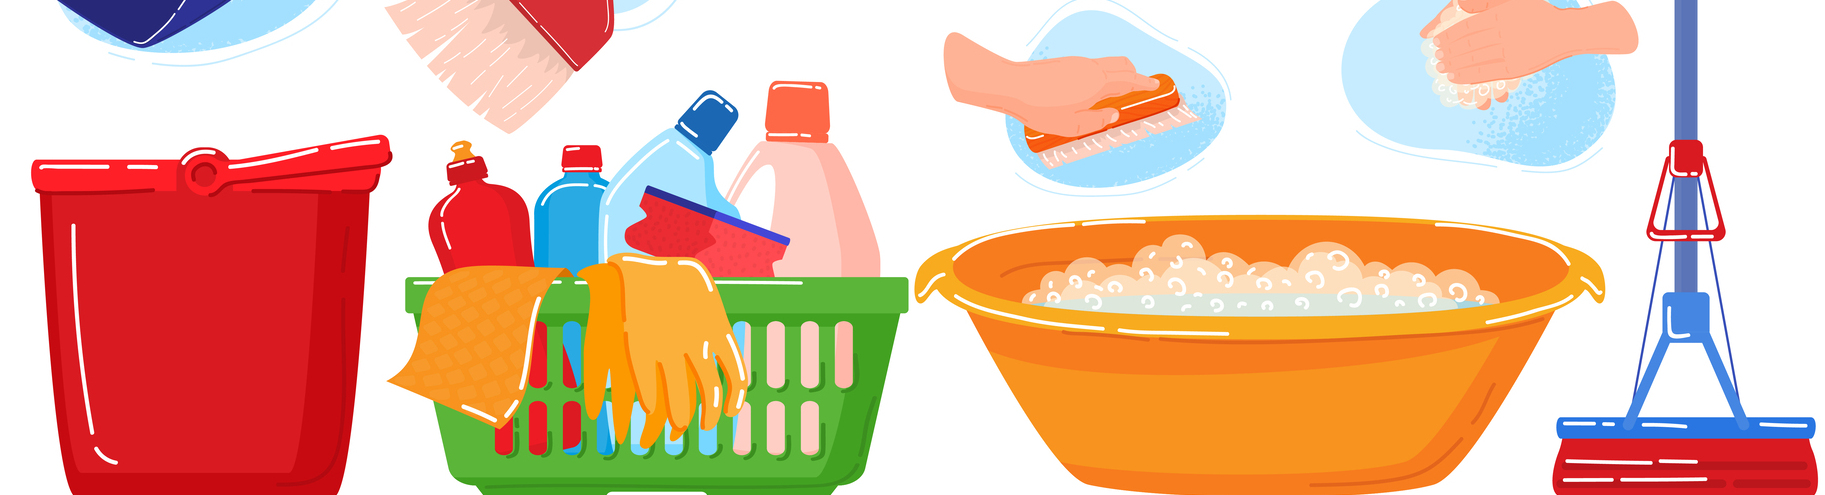 itens de limpeza para higienizar a casa e outros ambientes